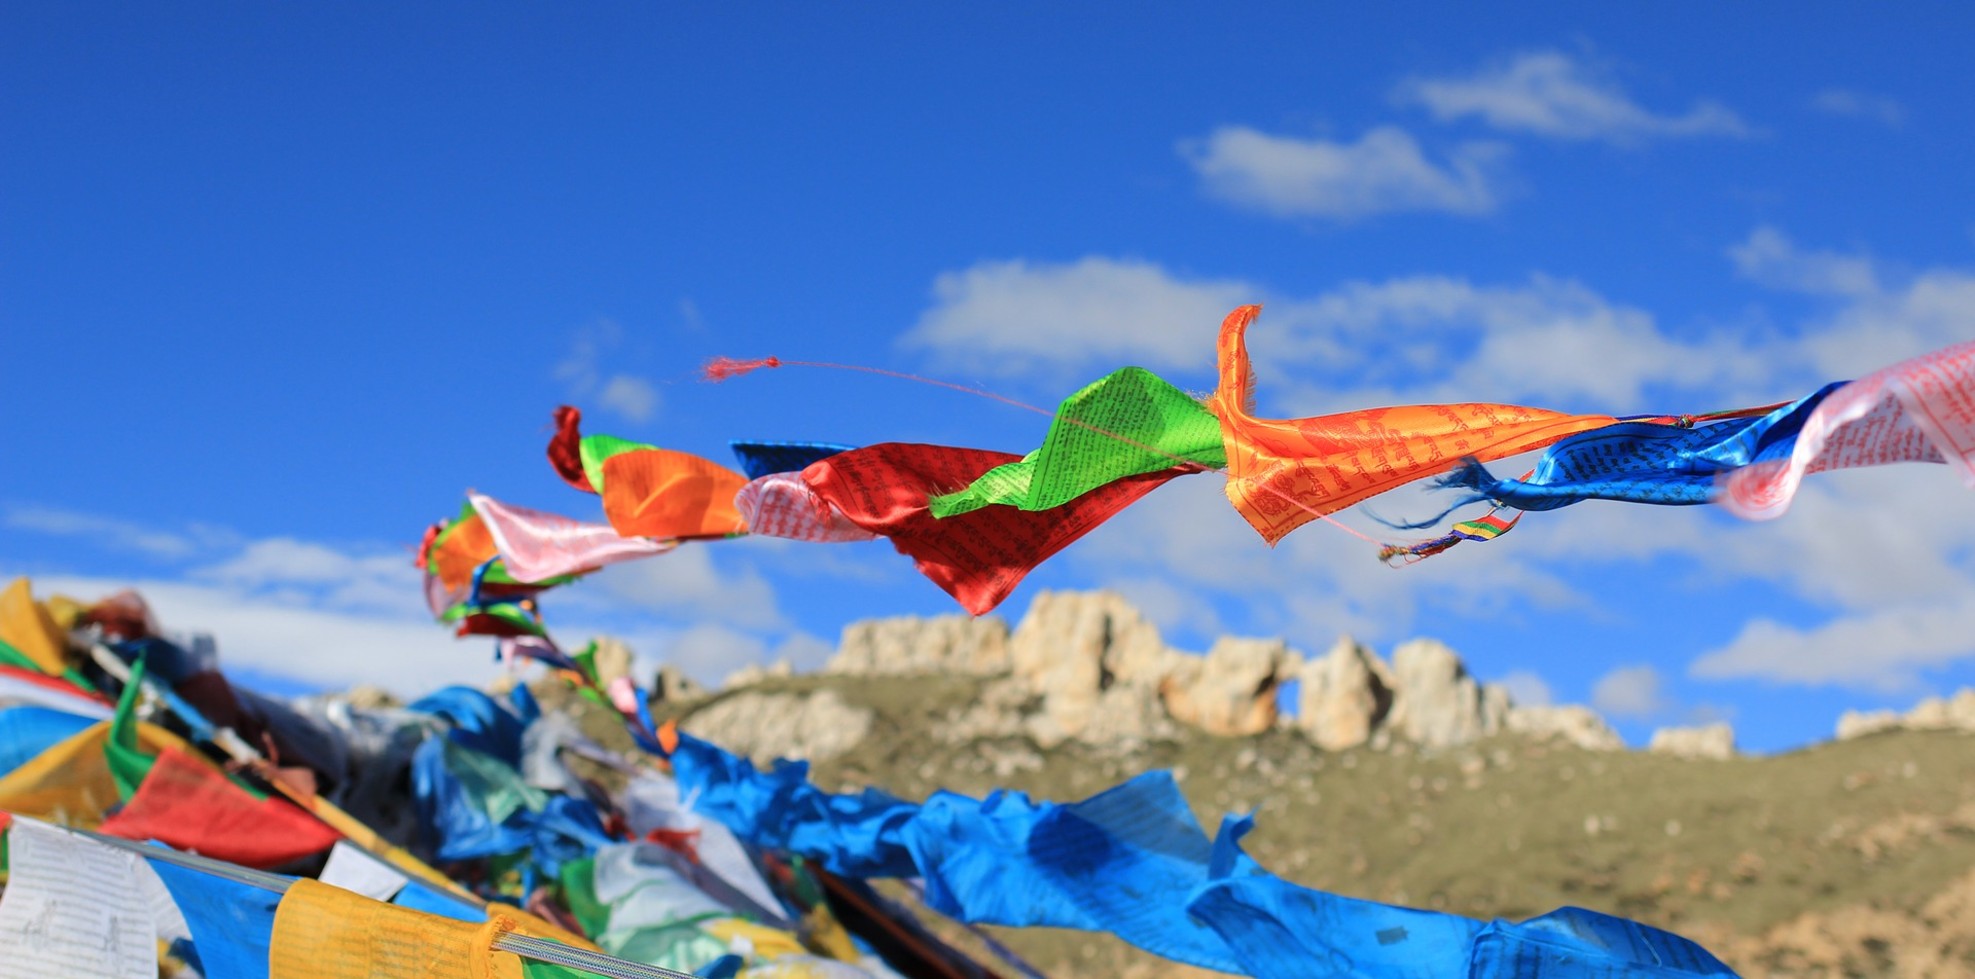 Tibet Nepal Combined Himalayan Tour